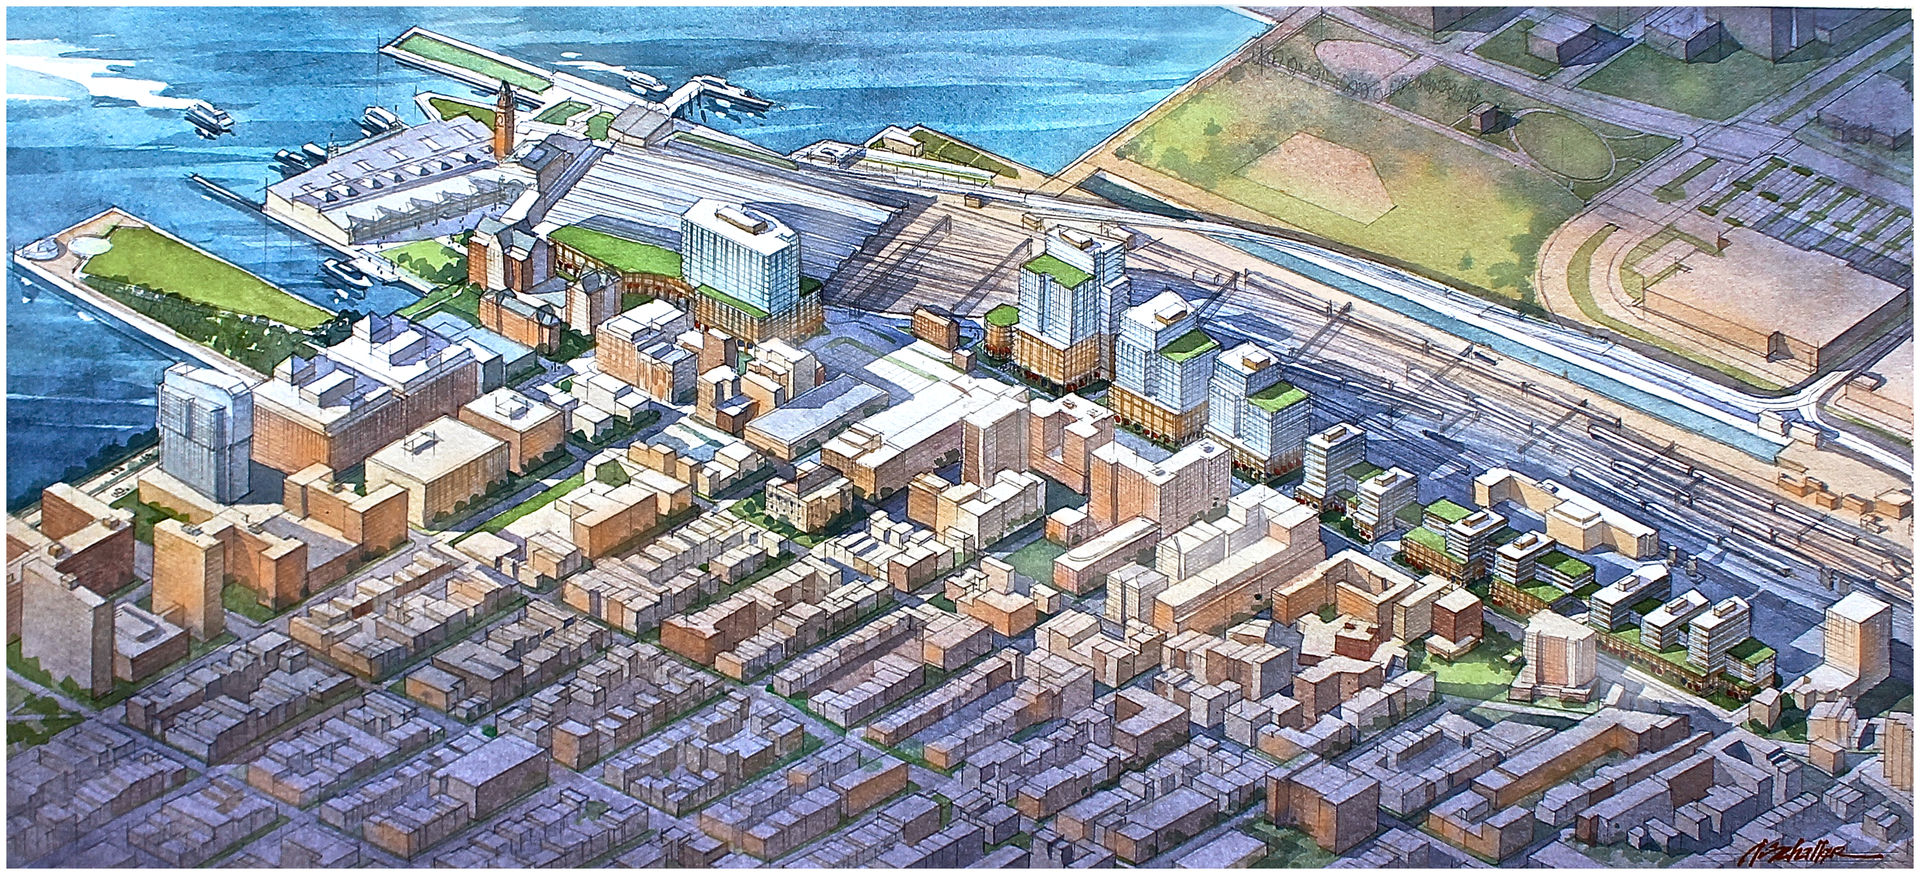 Hoboken Redevelopment Plan - 1